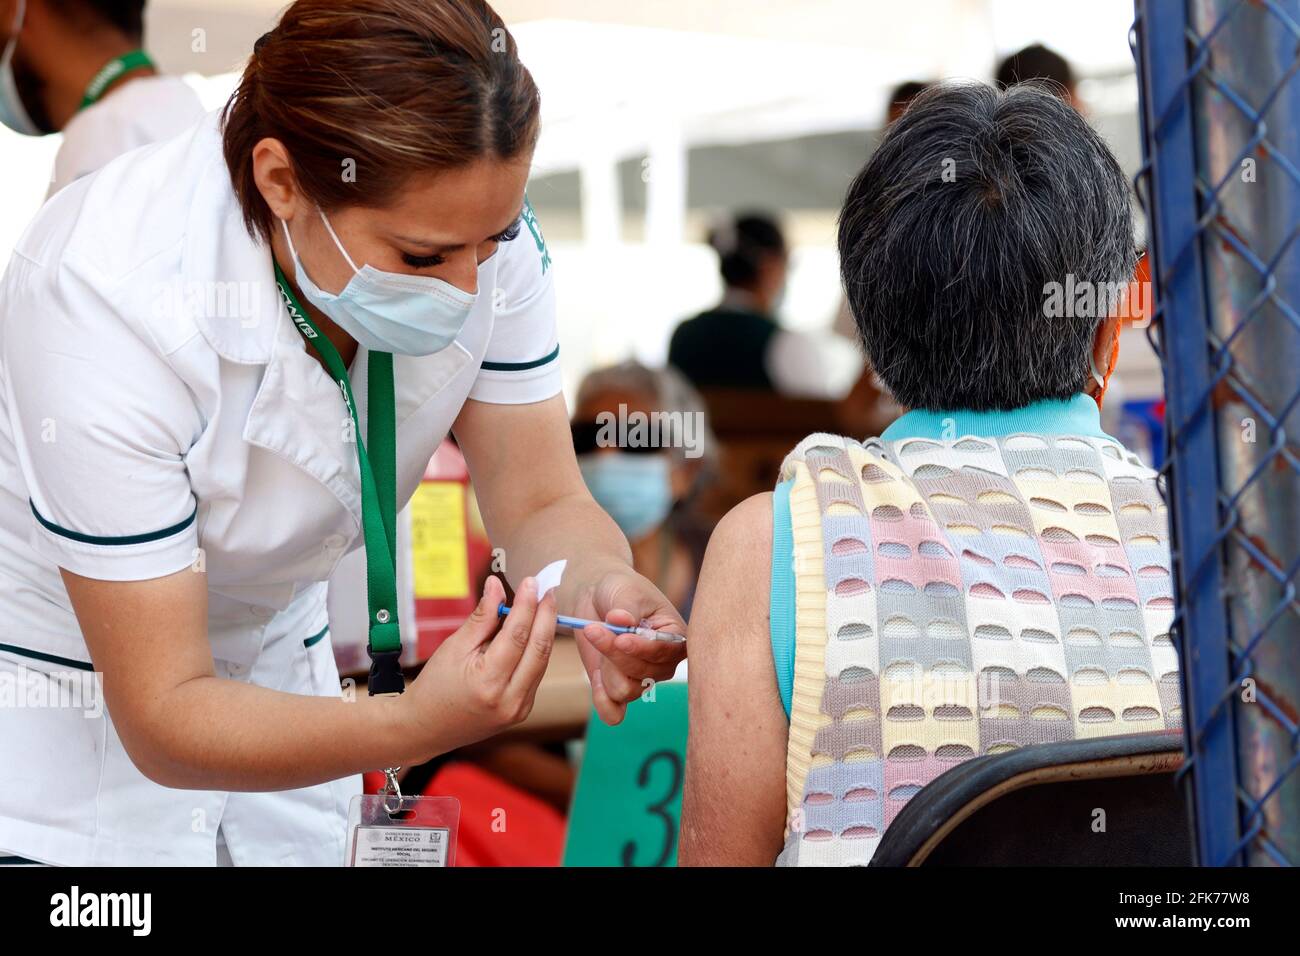 Nicht exklusiv: MEXIKO-STADT, MEXIKO - 28. APRIL: Ein älterer Bürger erhält die zweite Dosis des Impfstoffes Covid-19 Sputnik V während einer Massenimpfung gegen Peop Stockfoto